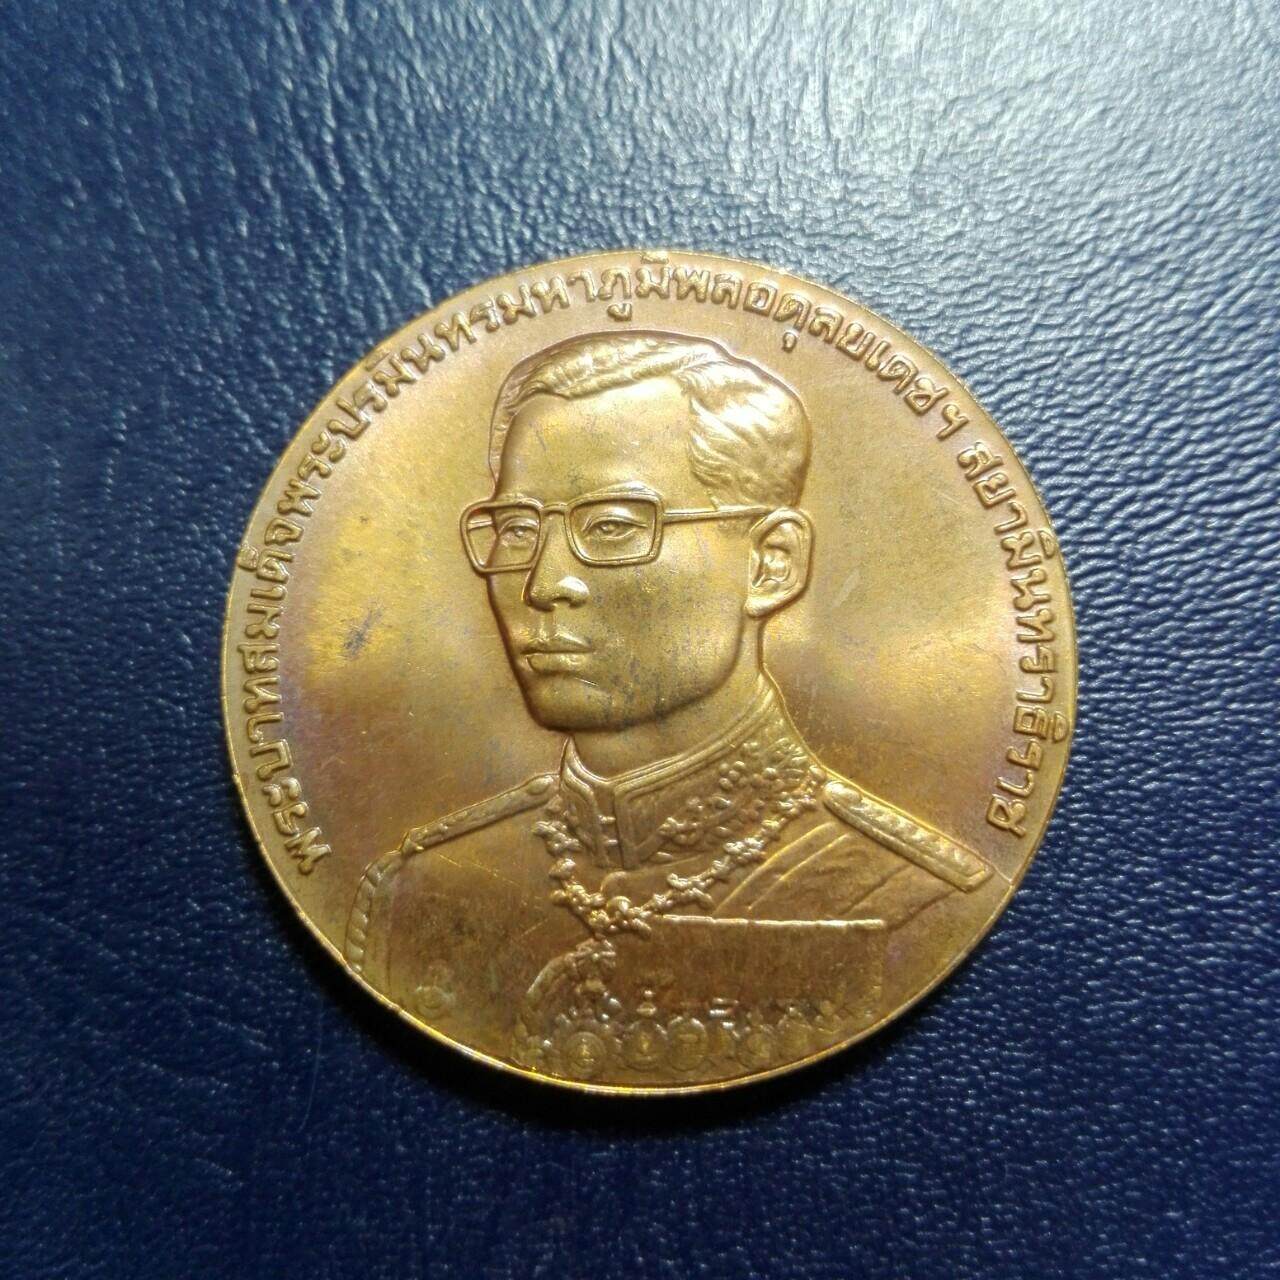 เหรียญ ร.9  ที่ระลึก ครบ 80 ปี กรมสรรพากร กระทรวงการคลัง ปี38 เนื้อทองแดง ผิวเดิม บล็อคกษาปณ์ ซองเดิมๆ